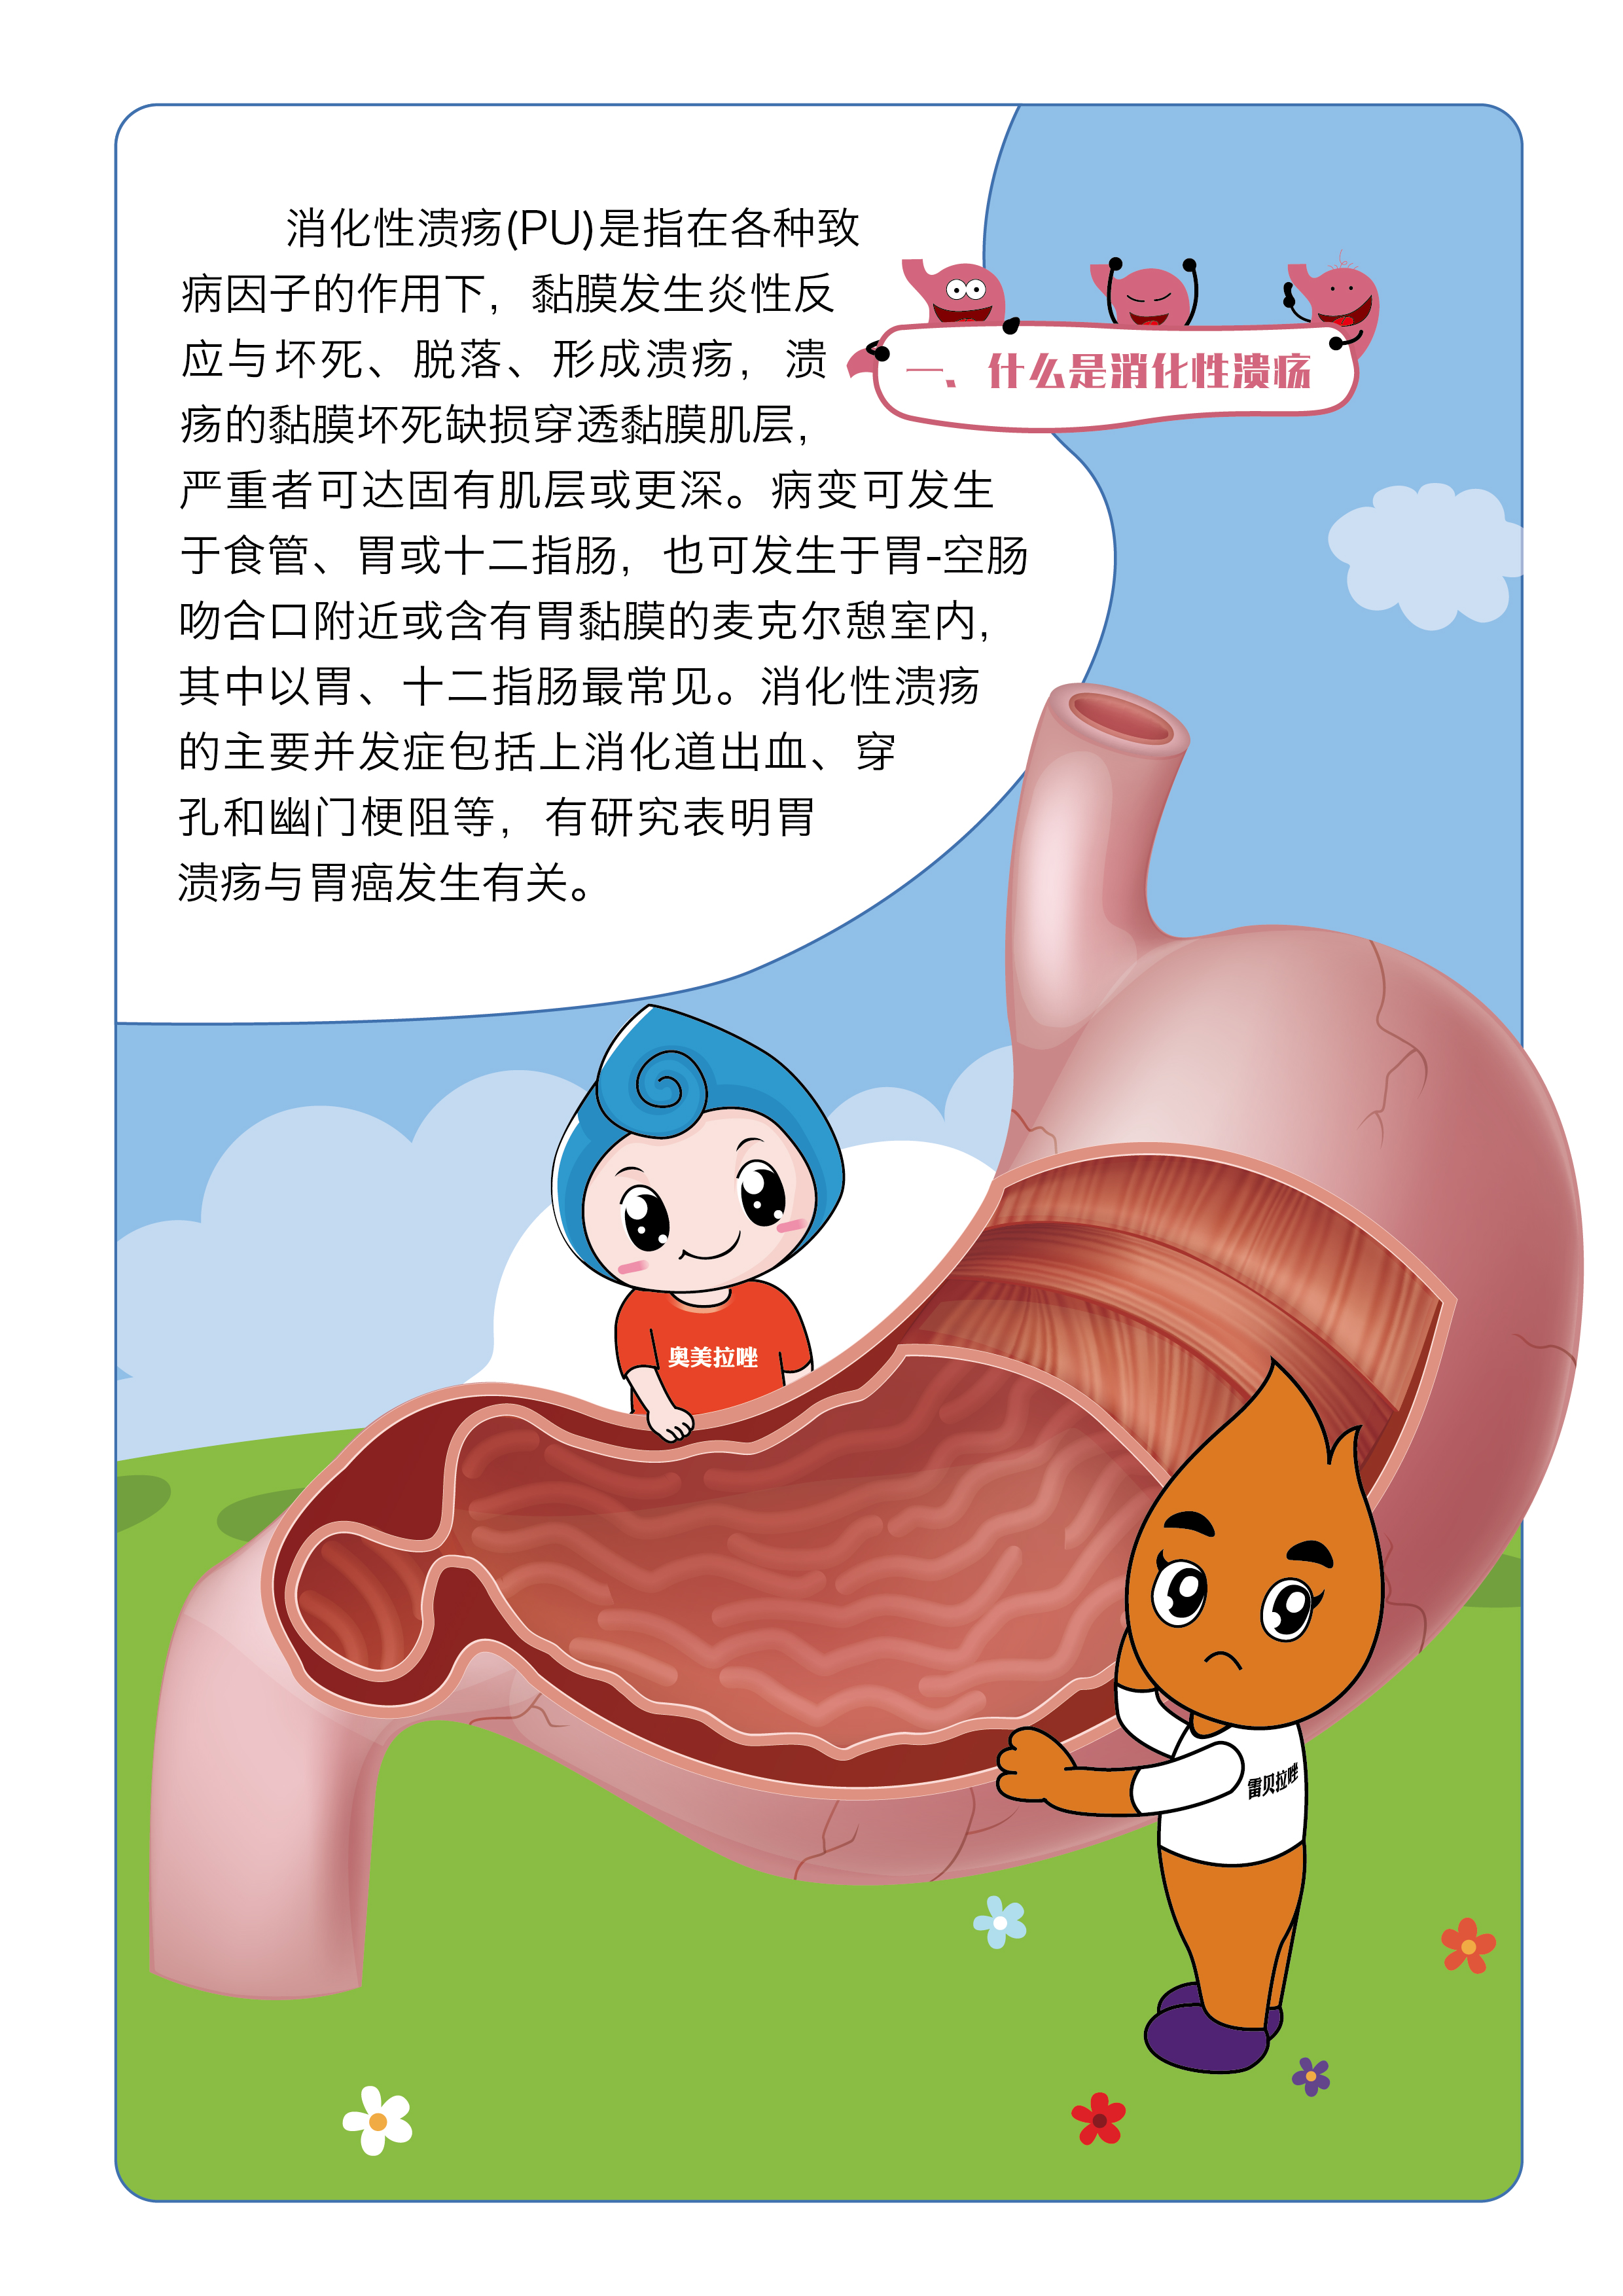 科技文摘 _ “胃癌中的胃癌”有望找到靶向药物！中国学者完成首个弥漫型胃癌蛋白质组学图谱